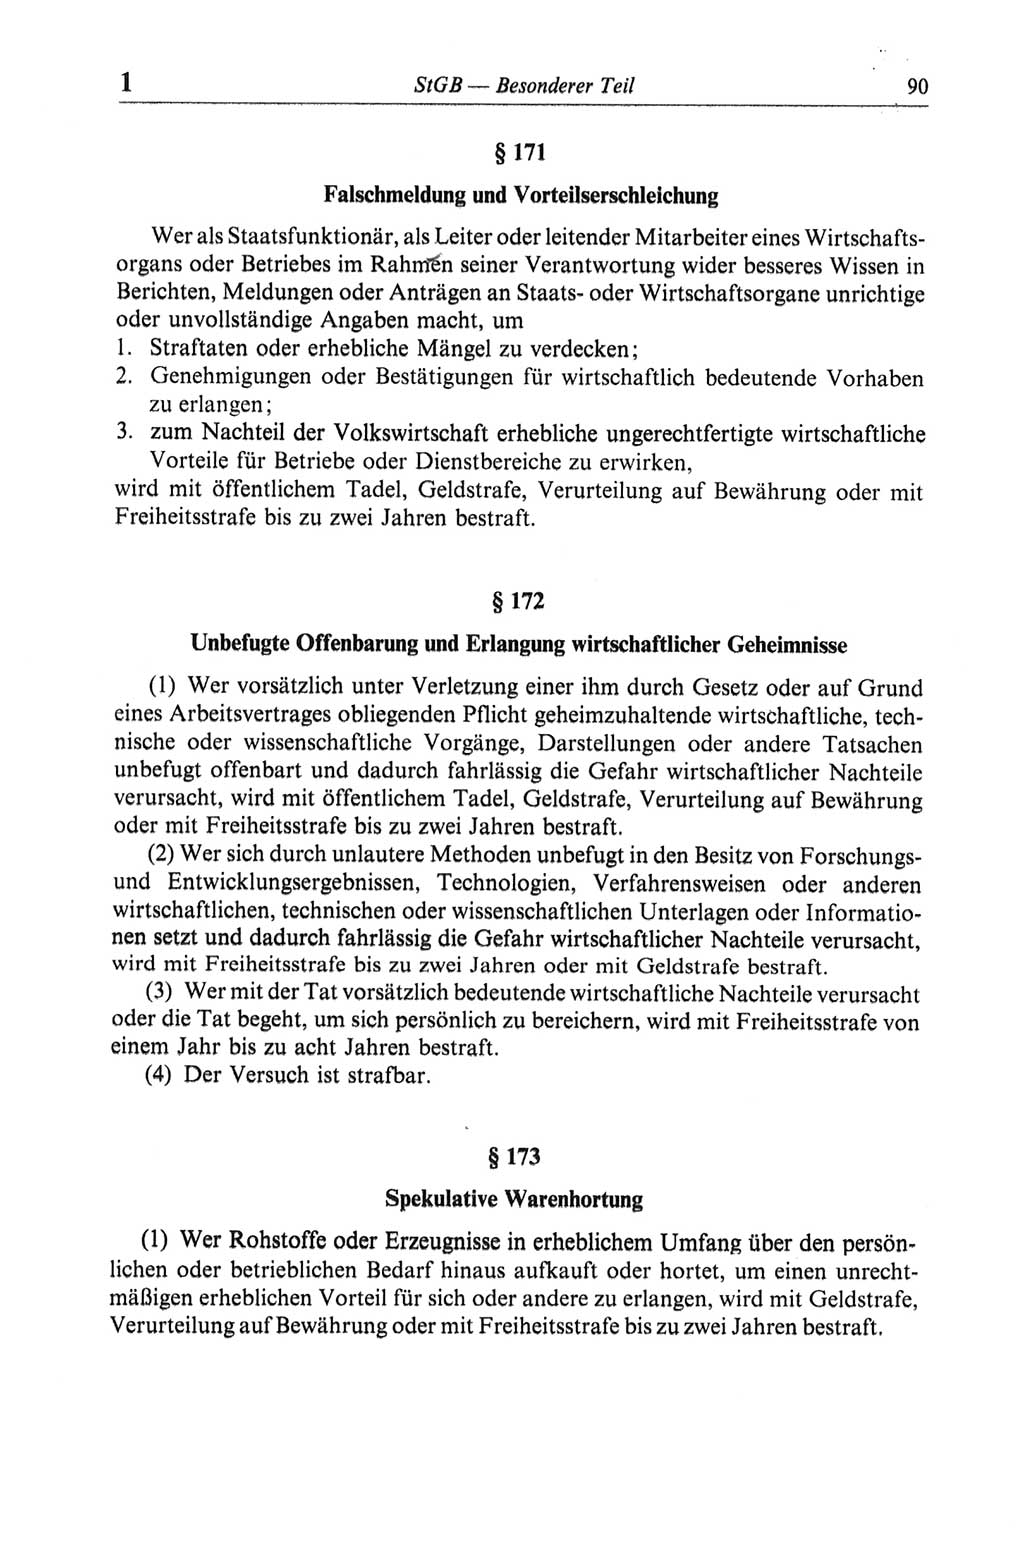 Strafgesetzbuch (StGB) der Deutschen Demokratischen Republik (DDR) und angrenzende Gesetze und Bestimmungen 1968, Seite 90 (StGB Ges. Best. DDR 1968, S. 90)